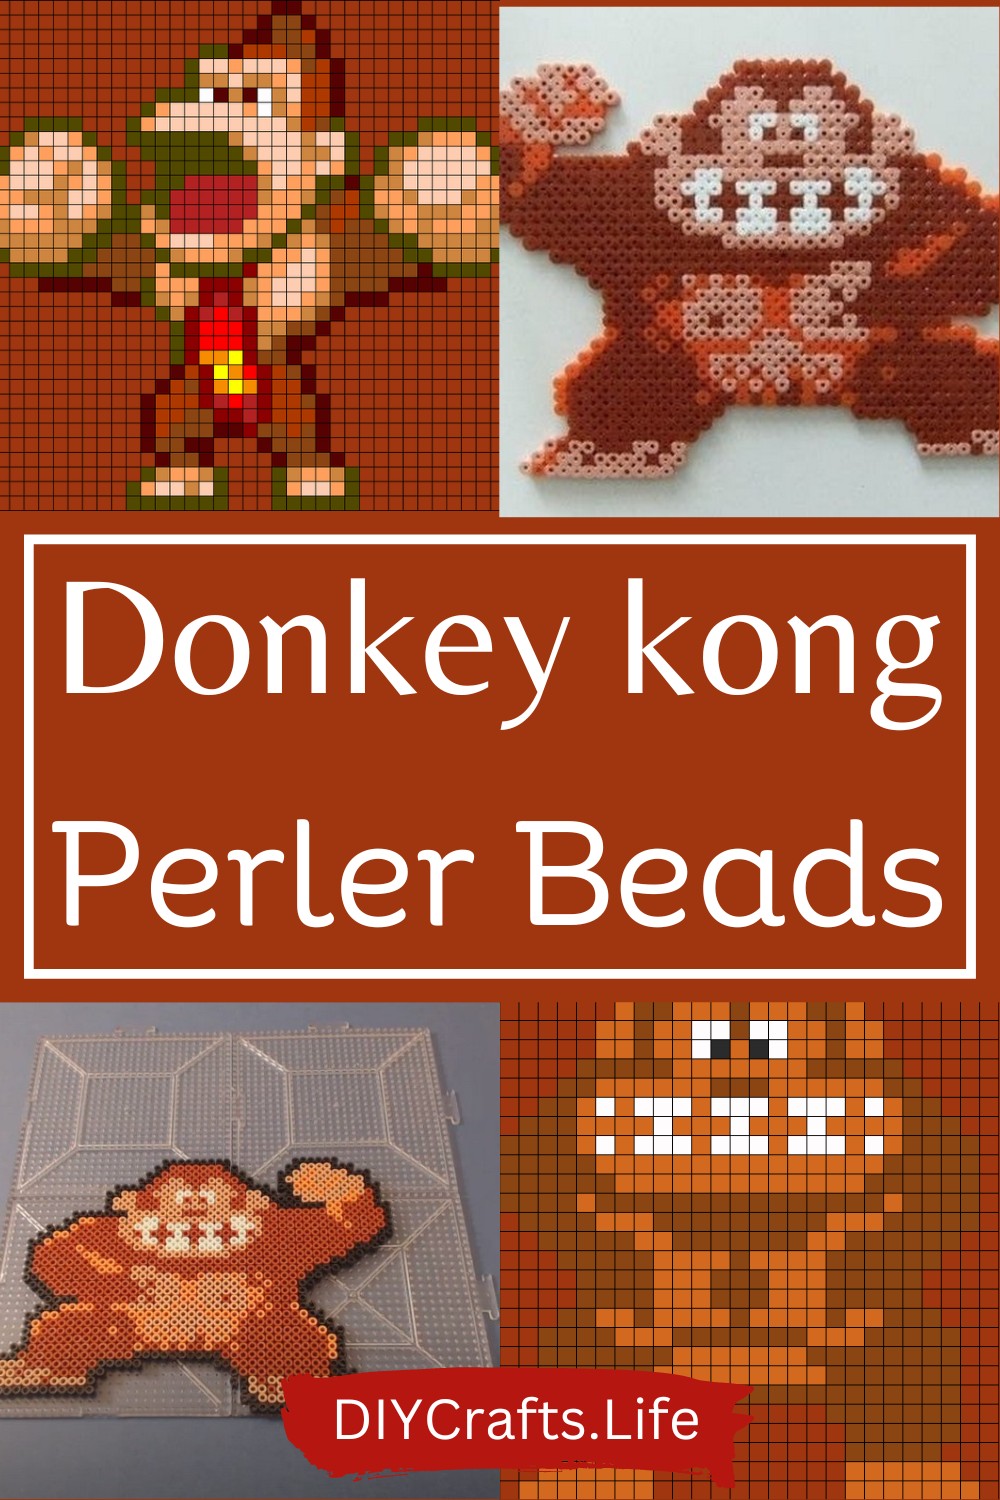 7 Donkey kong Perler Beads patterns